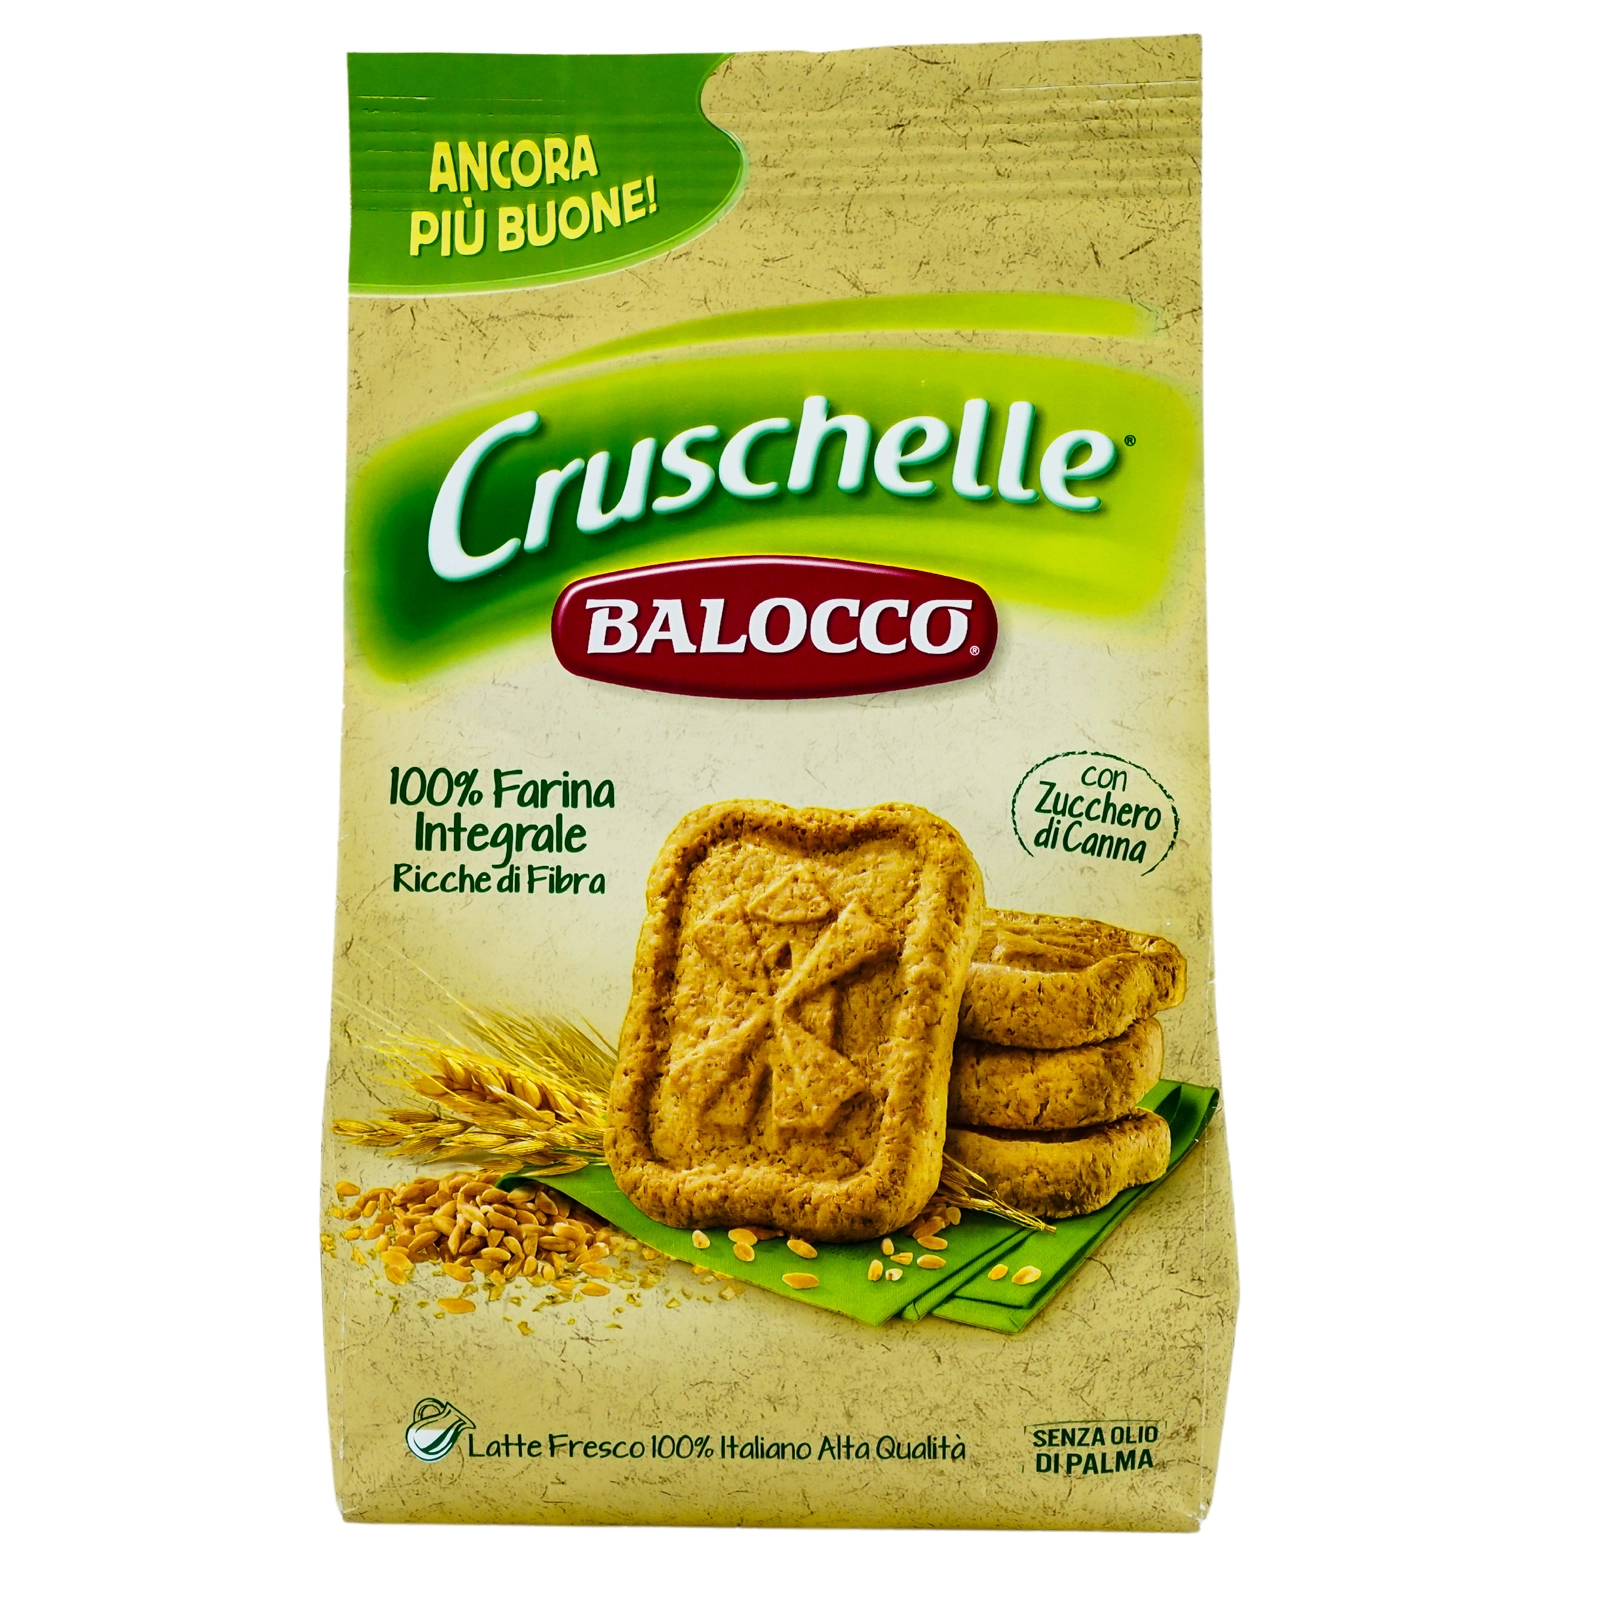 Biscuiti Cruschelle Balocco